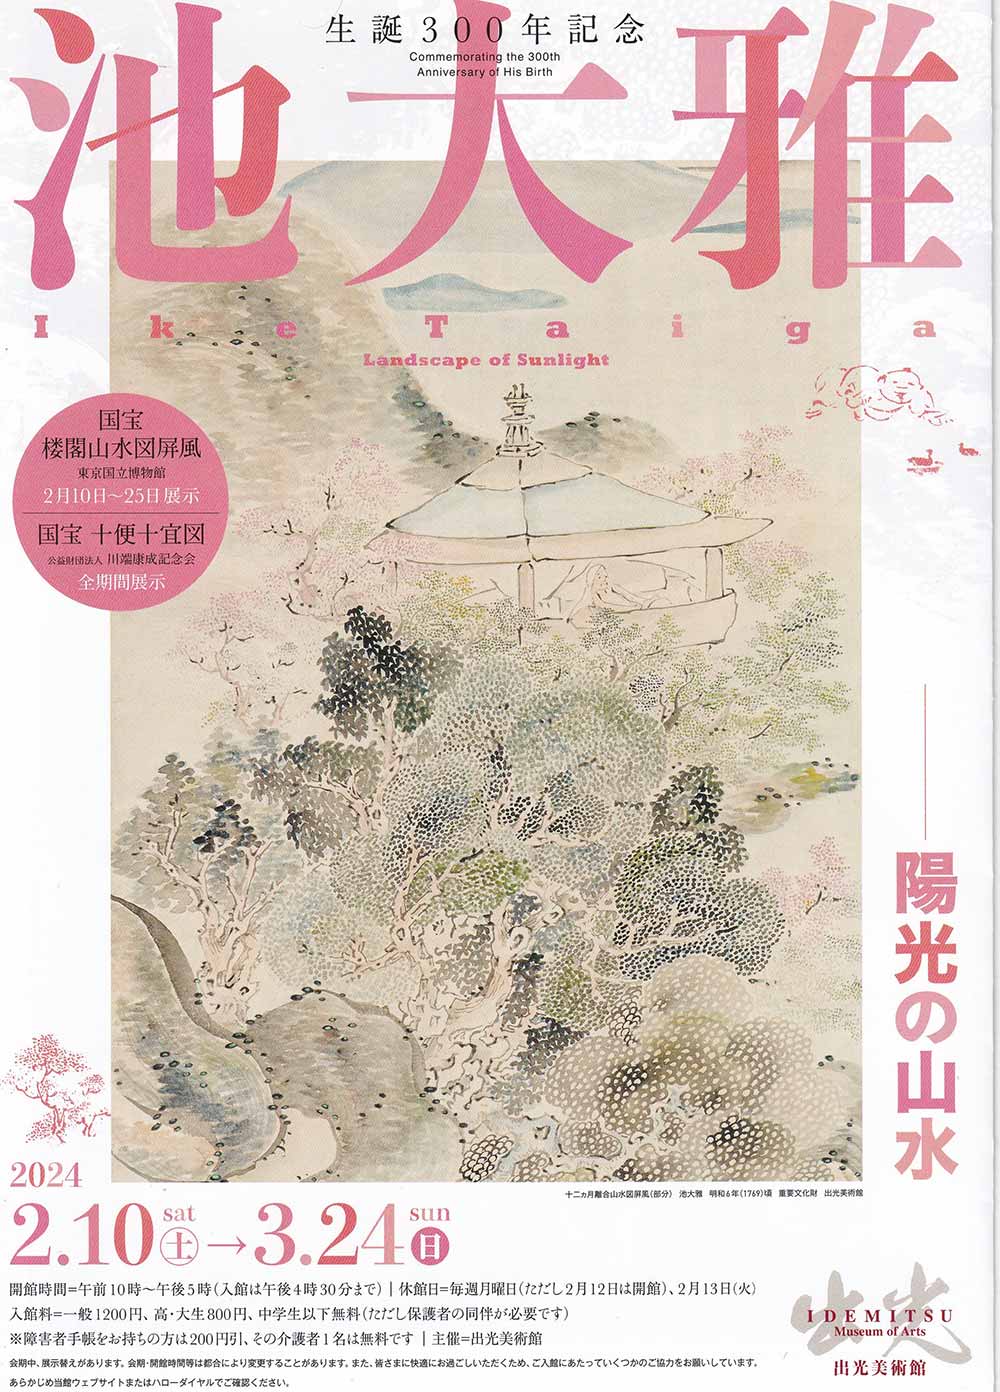 中国の名勝と重なる“日本の山水画”も描いた、18世紀の天才画家「池大雅」の回顧展